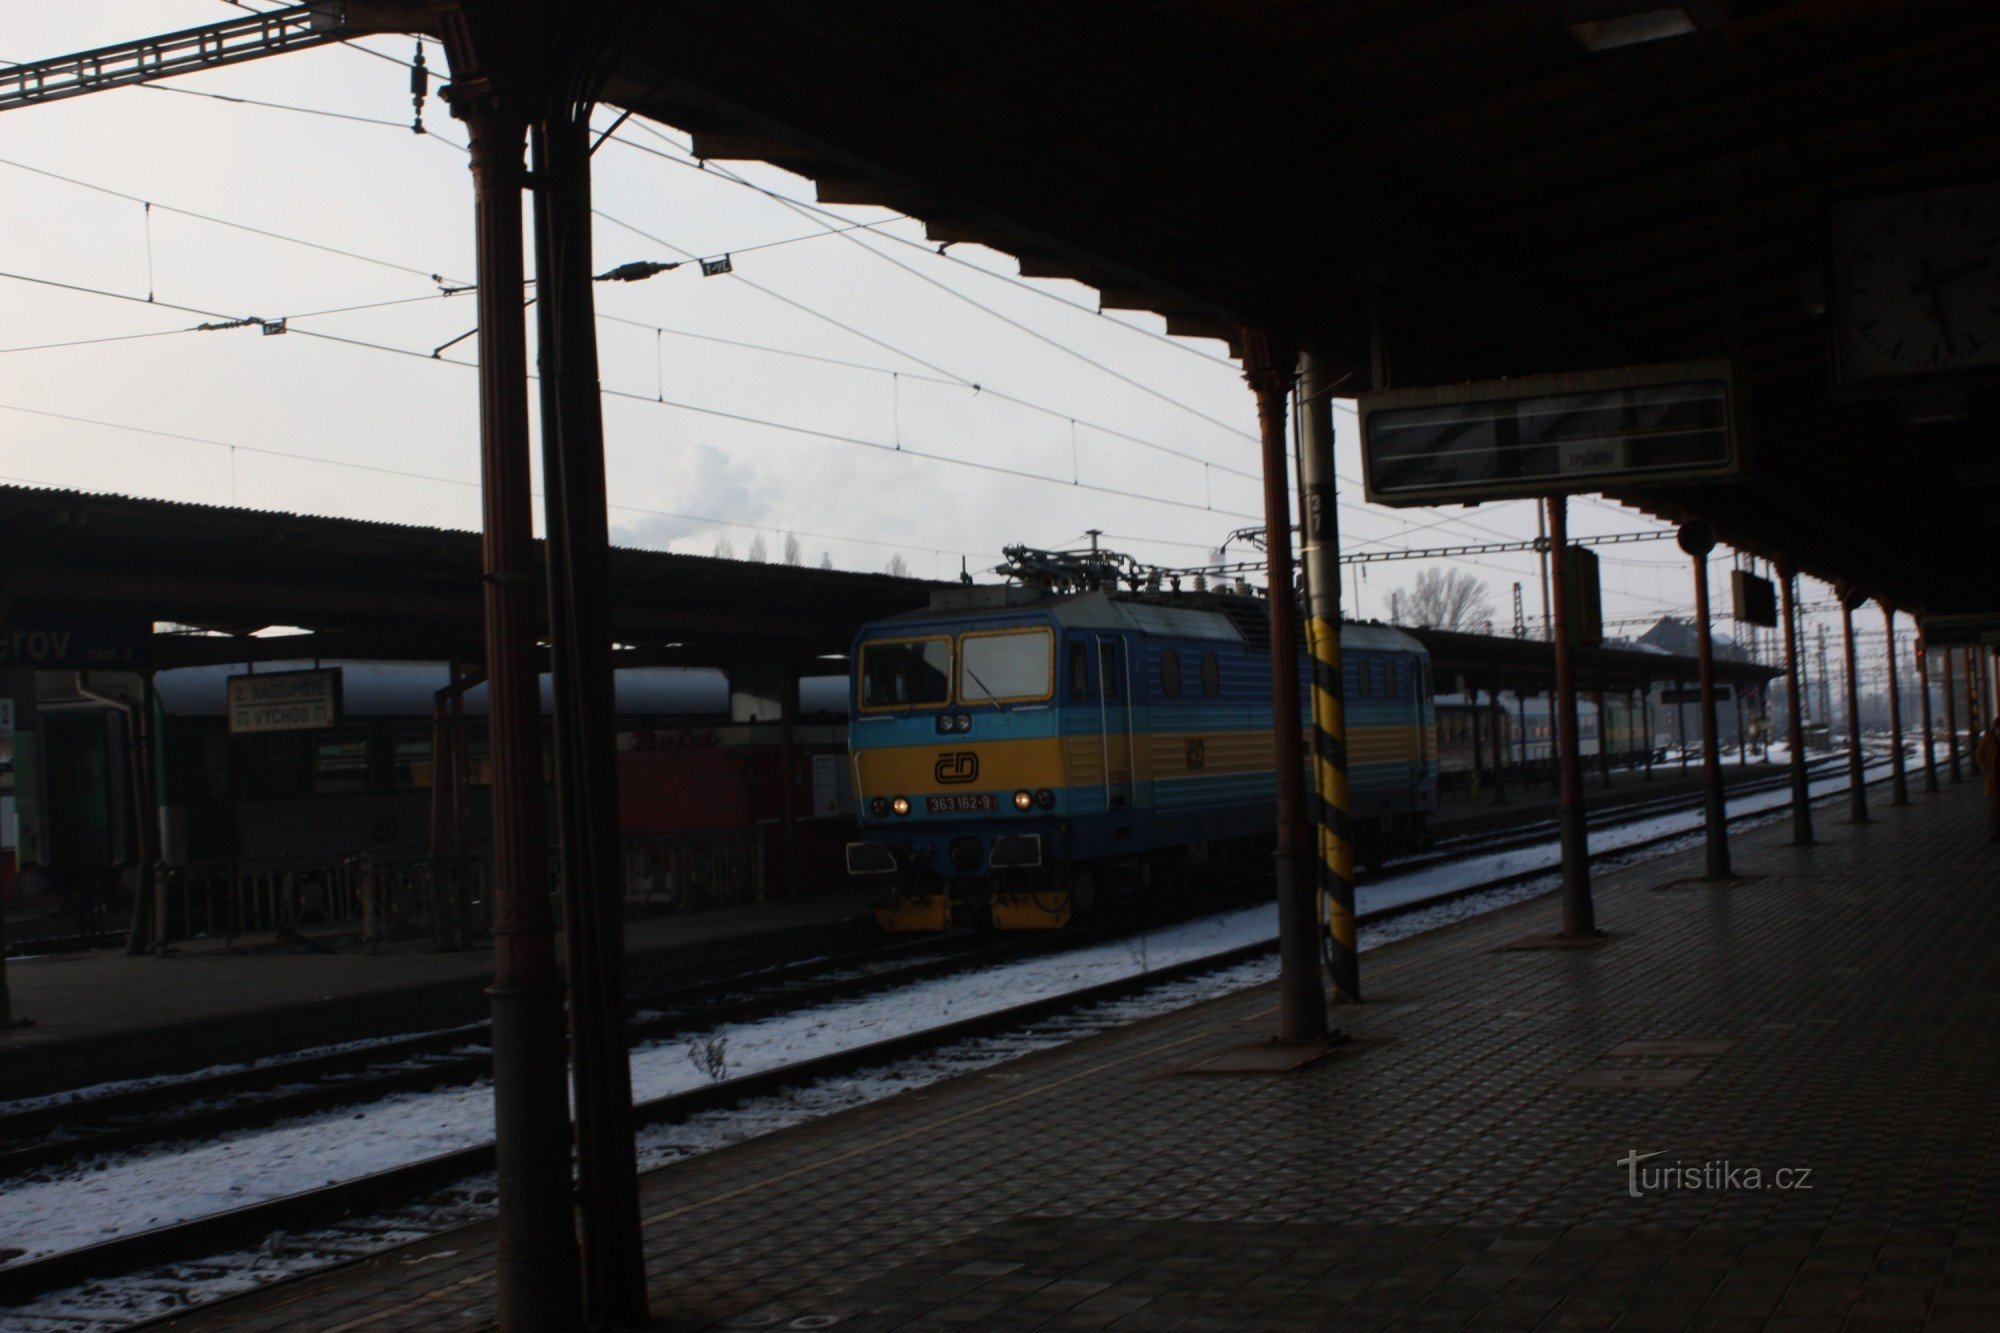 Quang cảnh từ sân ga đầu tiên của nhà ga xe lửa ở Přerov